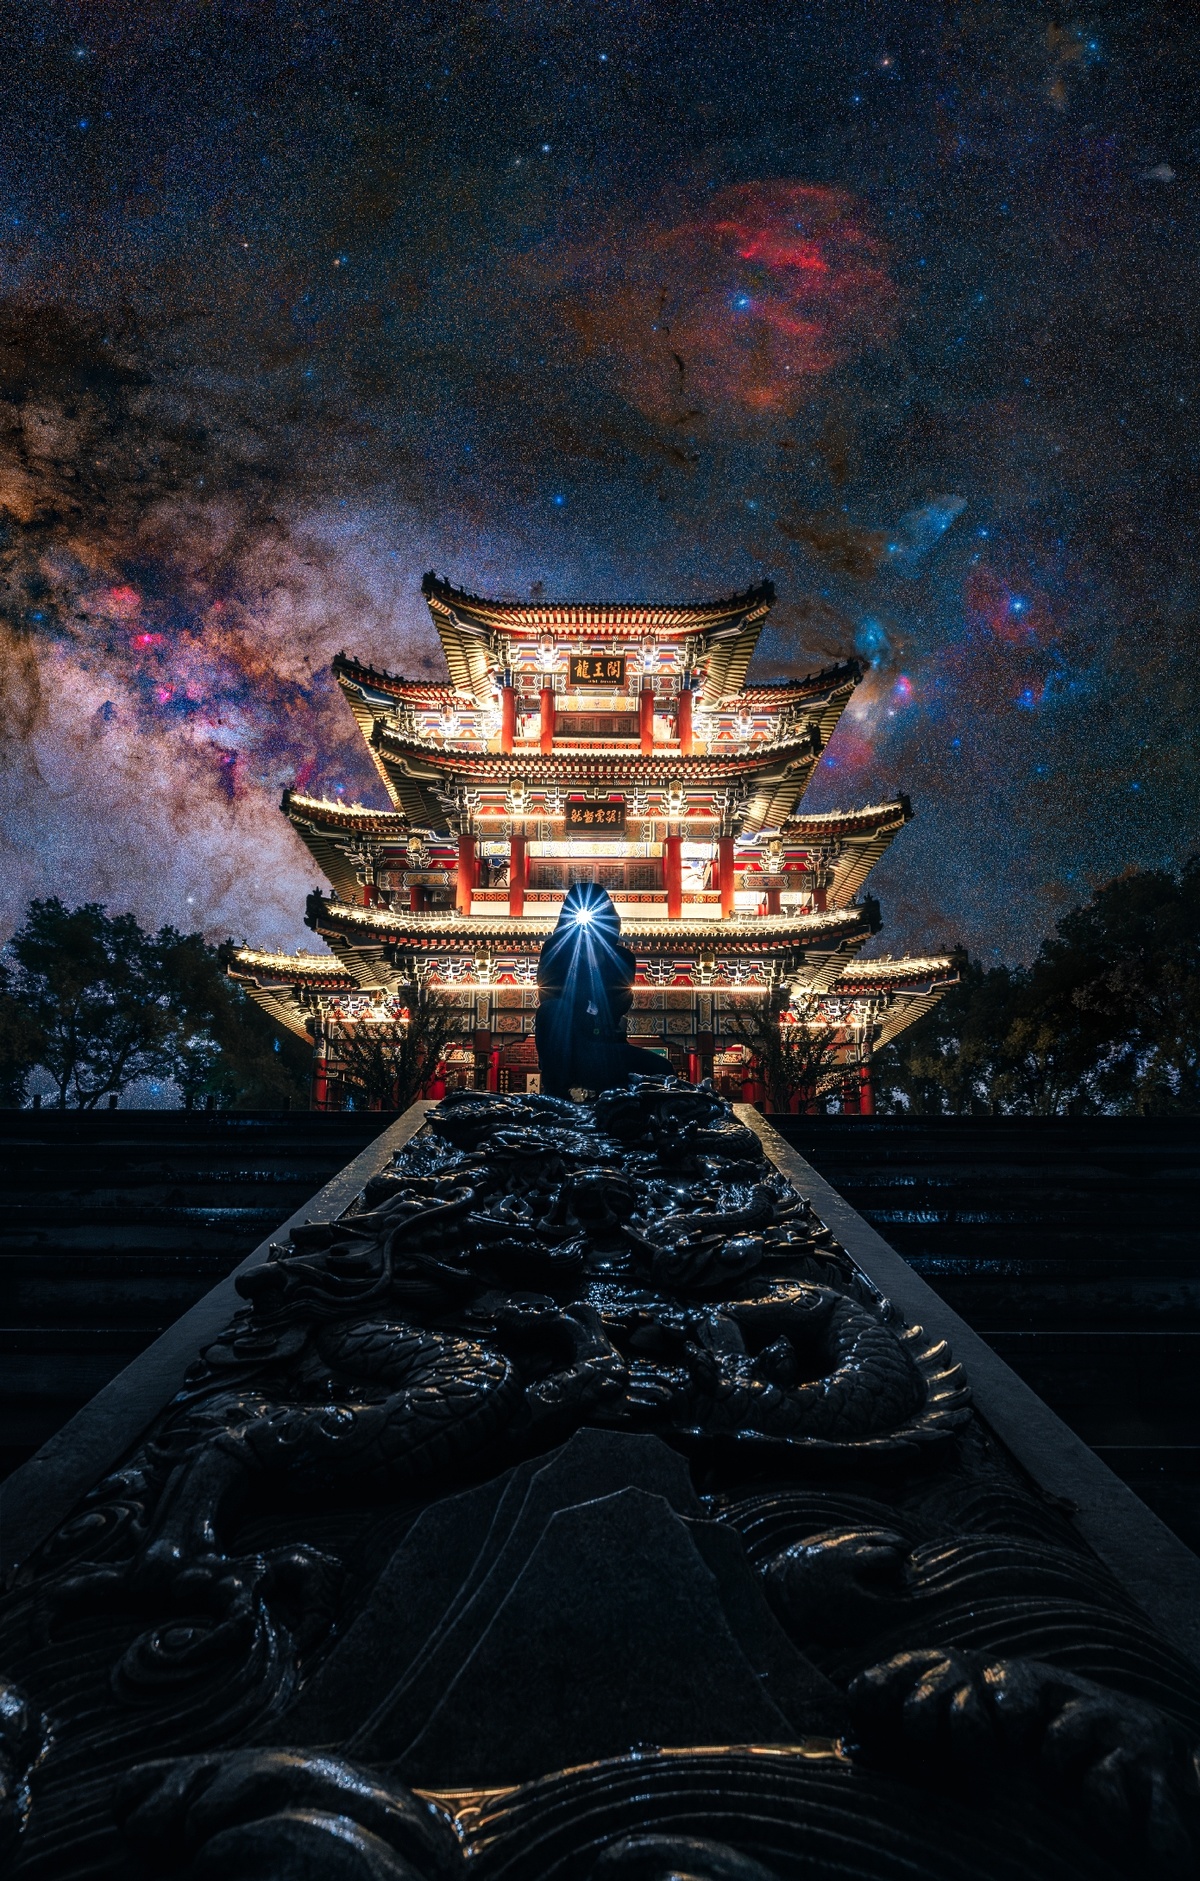 一个人站在一个看起来像寺庙的建筑物前 夜晚的天空